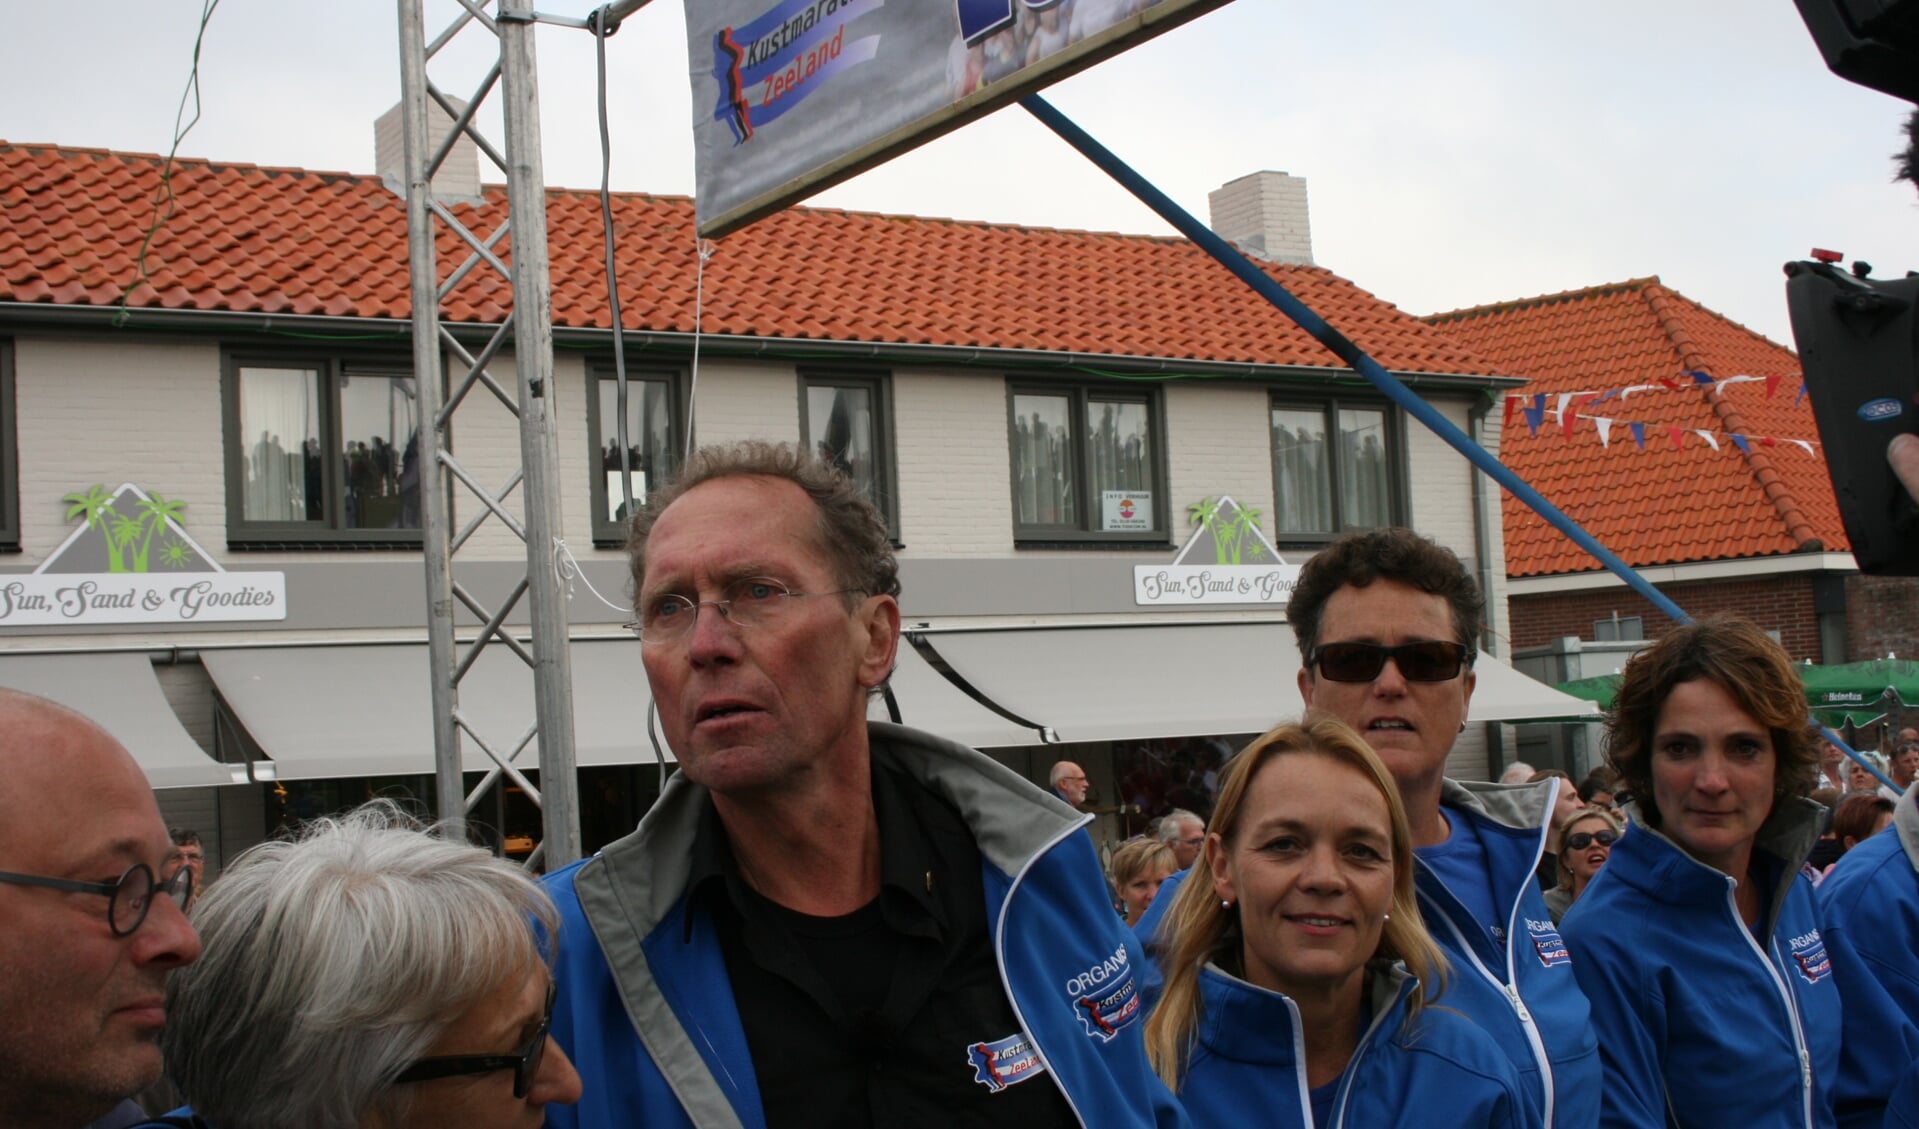 Lievense (68), boegbeeld Kustmarathon, overleden